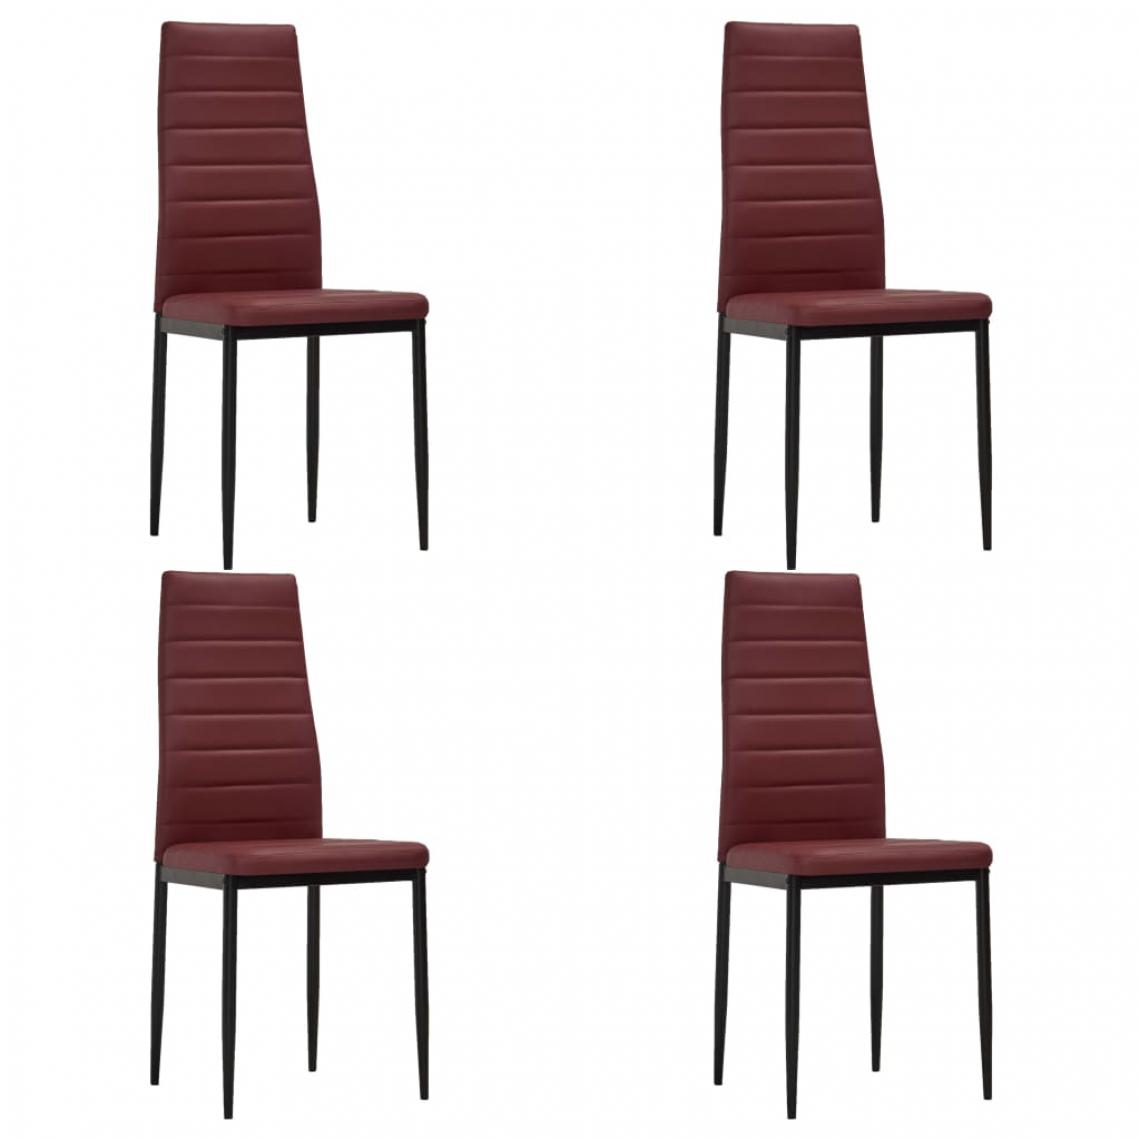 Chunhelife - Chaises de salle à manger 4 pcs Rouge bordeaux Similicuir - Chaises